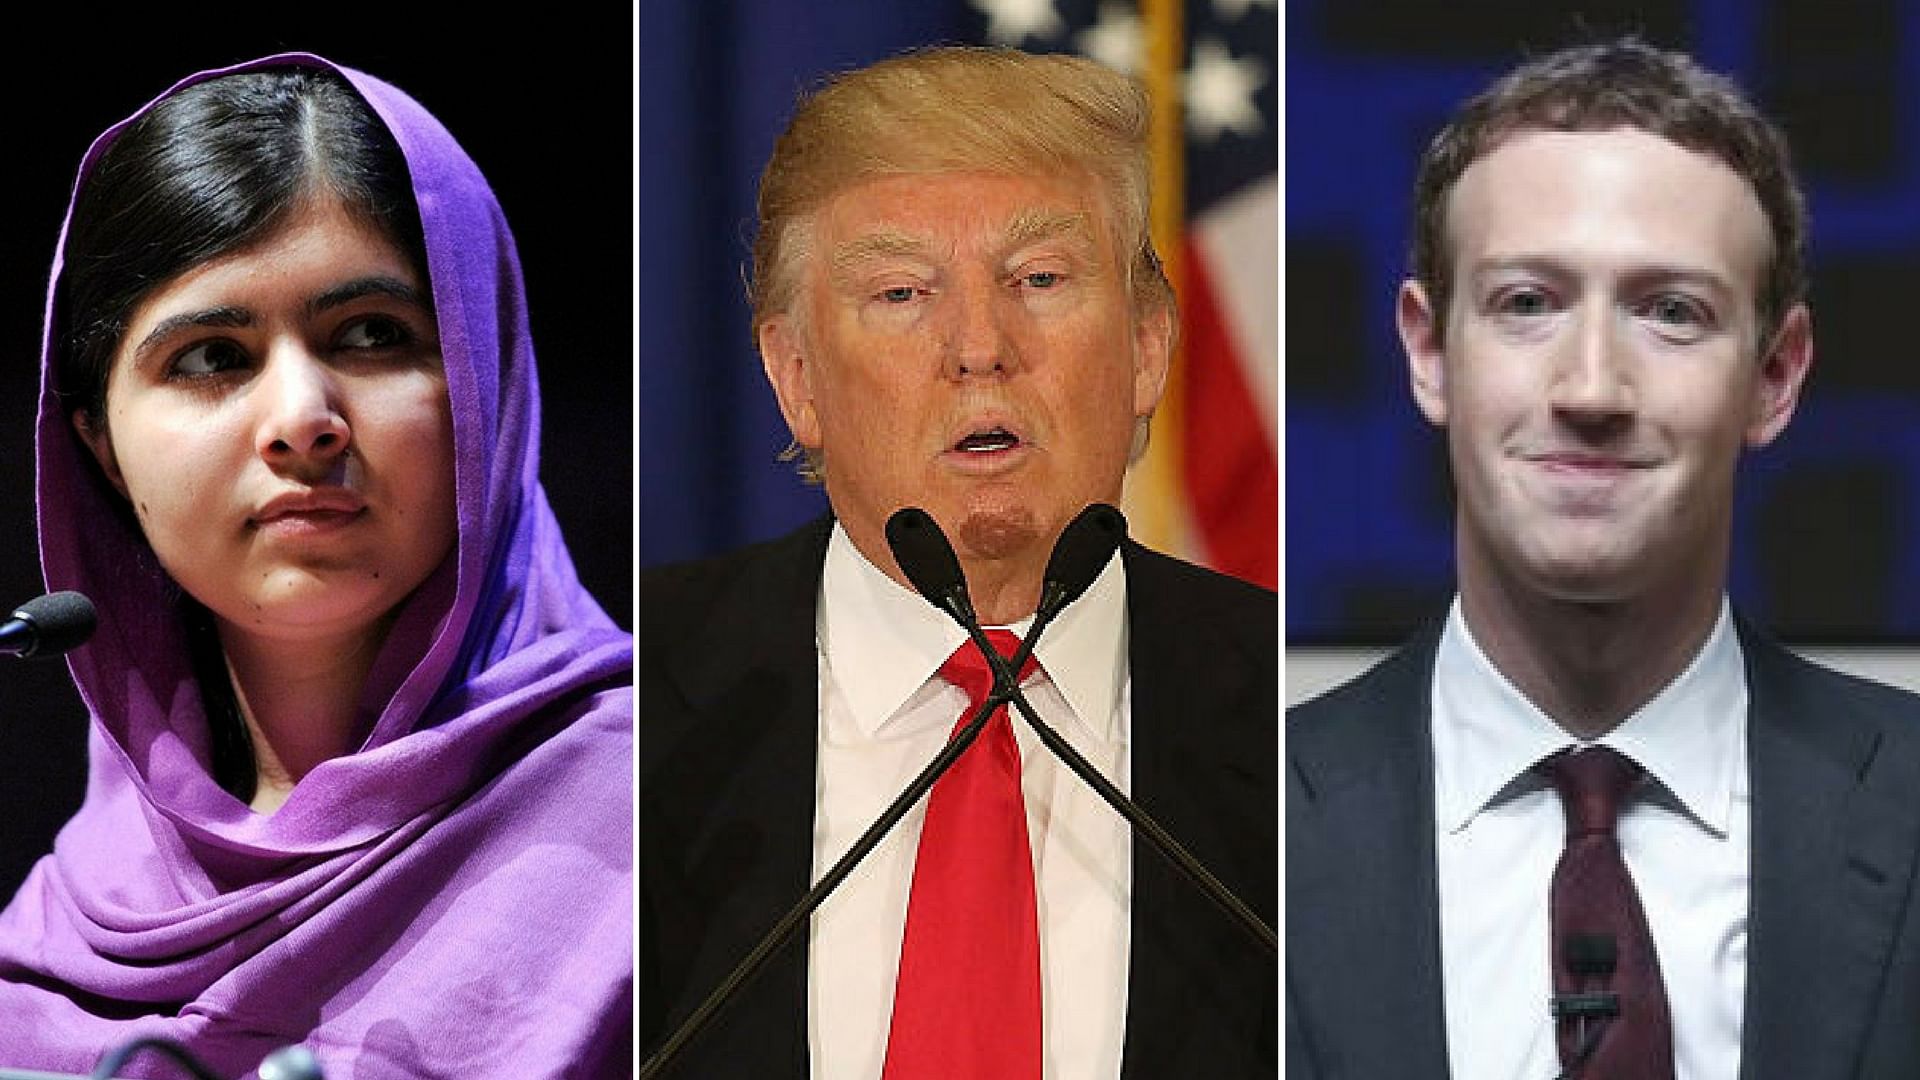 From left: Malala Yousafzai, Donald Trump and Mark Zuckerberg. (Photo: <b>The Quint</b>)